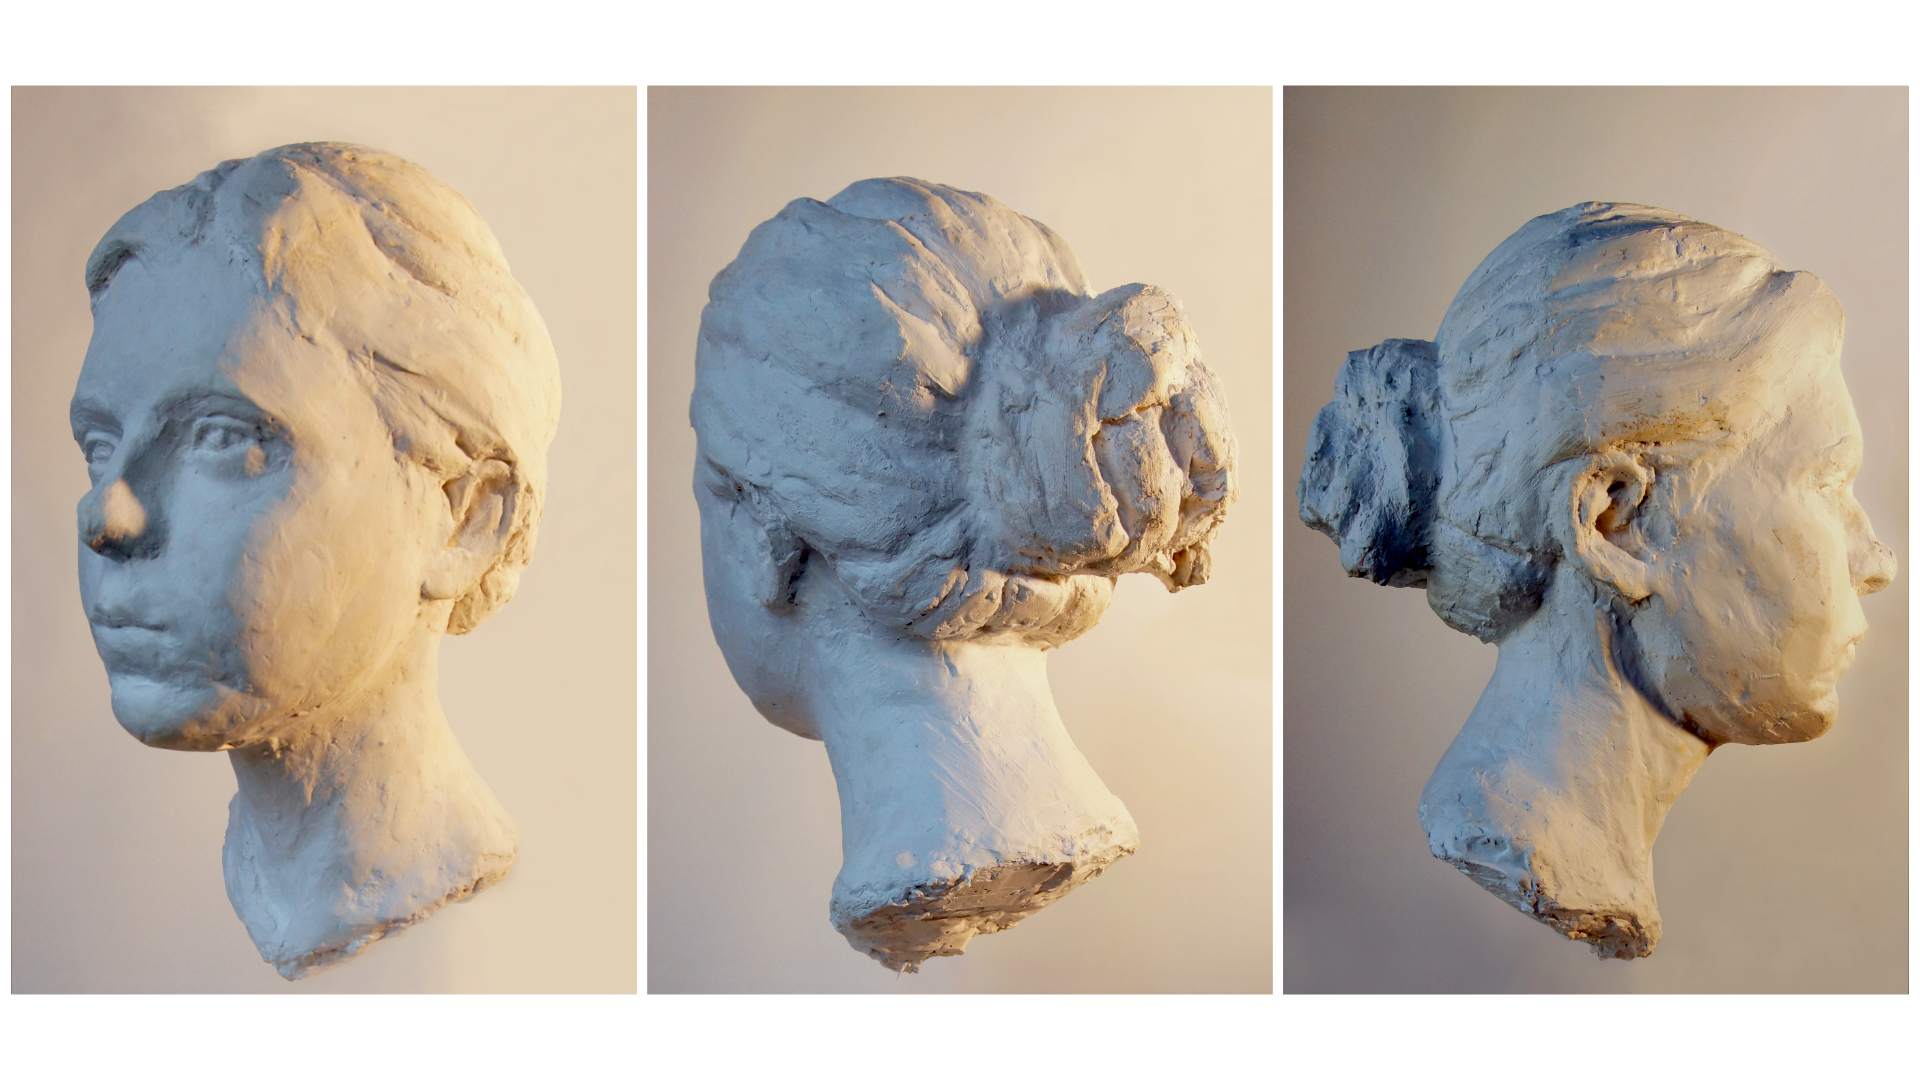 Zdjęcie przedstawia rzeźbę portretową młodej kobiety o neutralnym wyrazie twarzy z włosami związanymi w luźny kok z tyłu głowy. Rzeźba przedstawiona została z trzech perspektyw i ma realistyczny charakter.